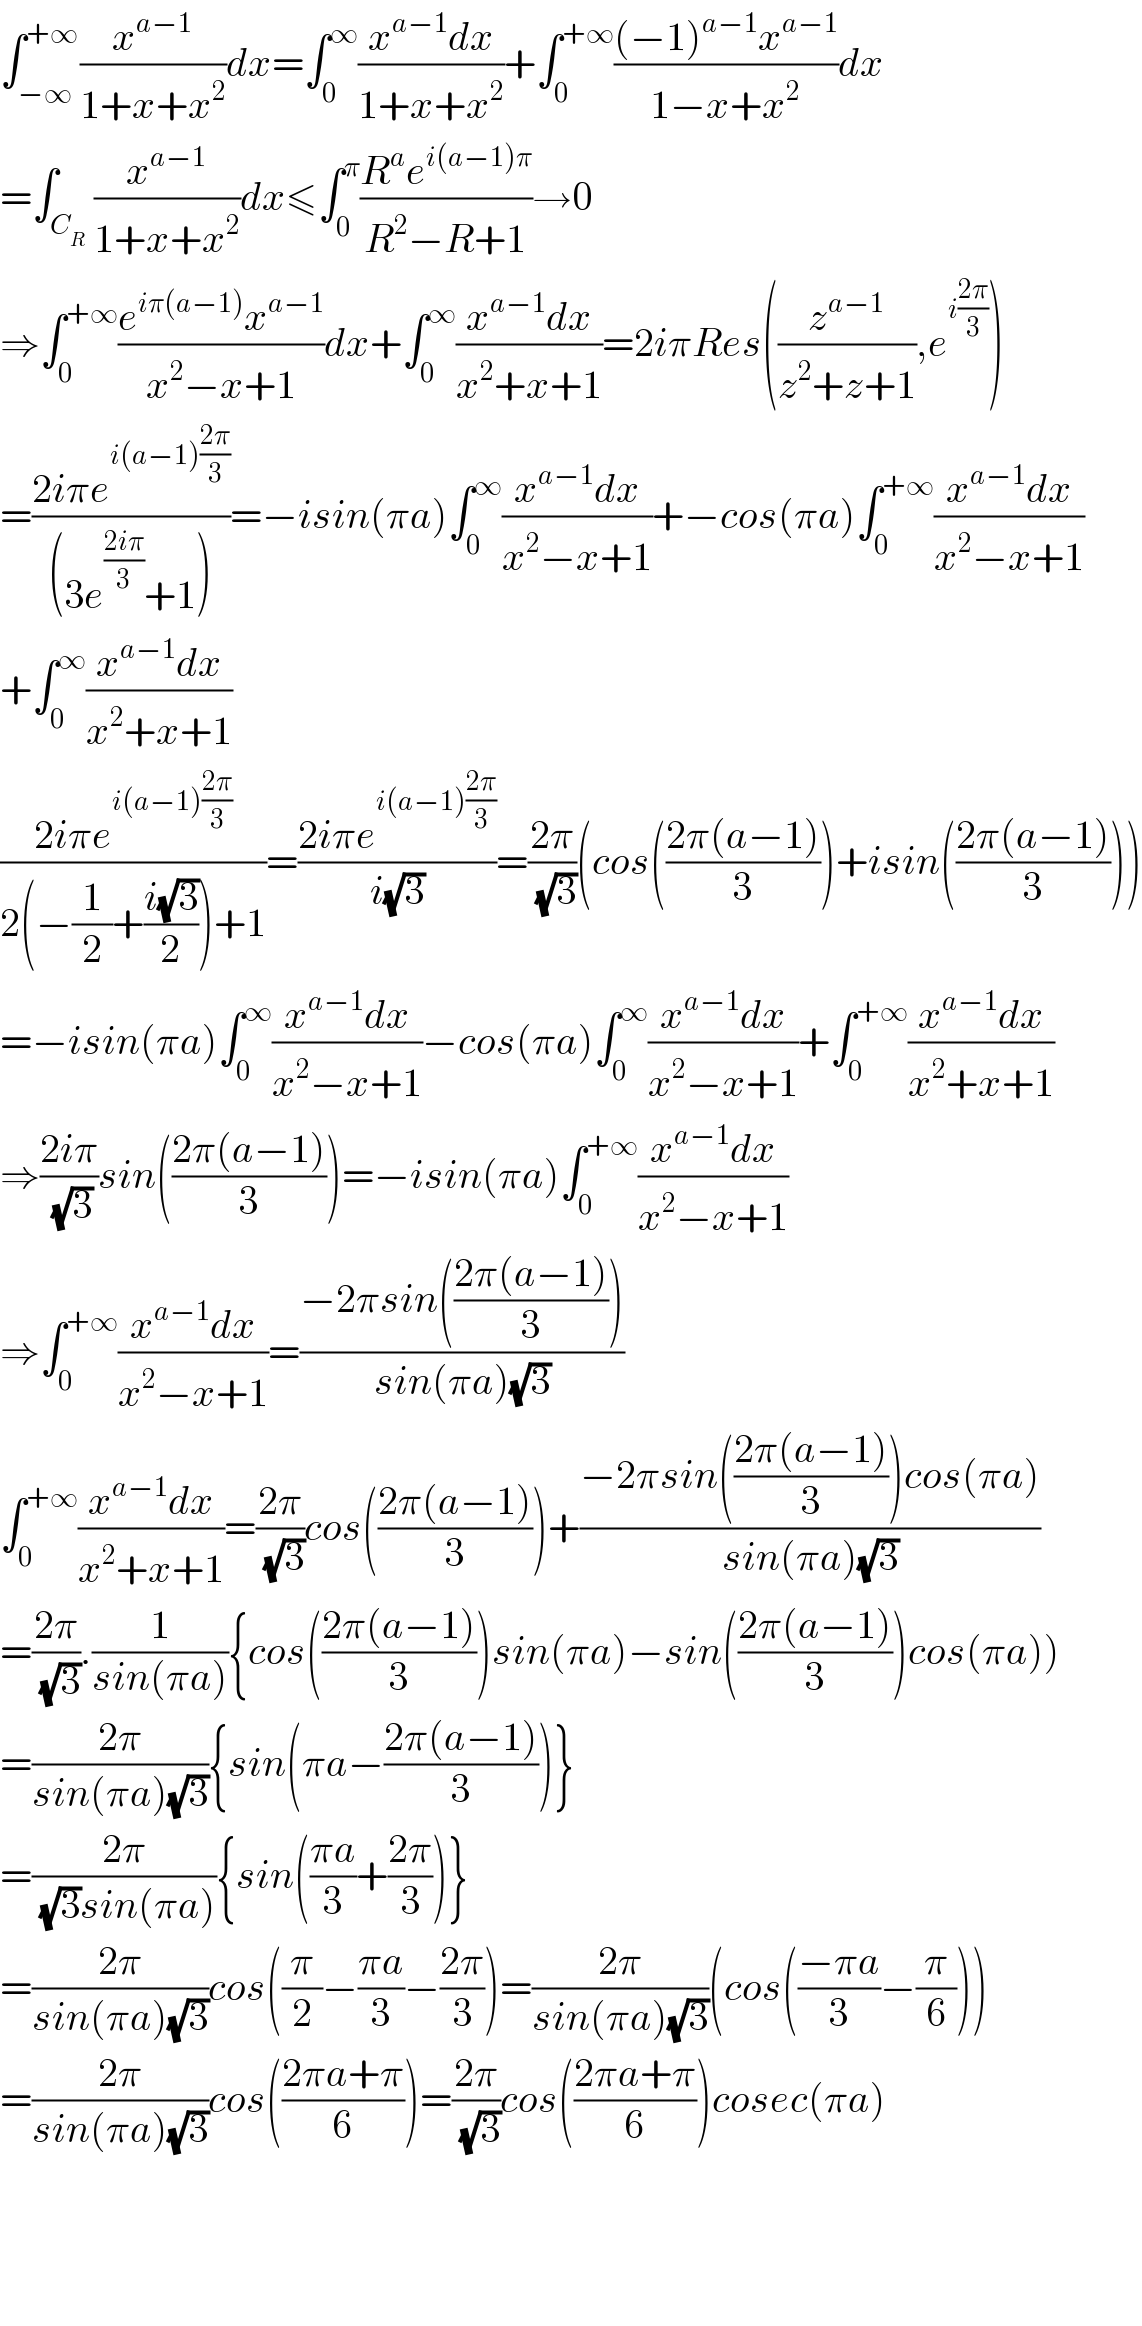 ∫_(−∞) ^(+∞) (x^(a−1) /(1+x+x^2 ))dx=∫_0 ^∞ ((x^(a−1) dx)/(1+x+x^2 ))+∫_0 ^(+∞) (((−1)^(a−1) x^(a−1) )/(1−x+x^2 ))dx  =∫_C_R  (x^(a−1) /(1+x+x^2 ))dx≤∫_0 ^π ((R^a e^(i(a−1)π) )/(R^2 −R+1))→0  ⇒∫_0 ^(+∞) ((e^(iπ(a−1)) x^(a−1) )/(x^2 −x+1))dx+∫_0 ^∞ ((x^(a−1) dx)/(x^2 +x+1))=2iπRes((z^(a−1) /(z^2 +z+1)),e^(i((2π)/3)) )  =((2iπe^(i(a−1)((2π)/3)) )/((3e^((2iπ)/3) +1)))=−isin(πa)∫_0 ^∞ ((x^(a−1) dx)/(x^2 −x+1))+−cos(πa)∫_0 ^(+∞) ((x^(a−1) dx)/(x^2 −x+1))  +∫_0 ^∞ ((x^(a−1) dx)/(x^2 +x+1))  ((2iπe^(i(a−1)((2π)/3)) )/(2(−(1/2)+((i(√3))/2))+1))=((2iπe^(i(a−1)((2π)/3)) )/(i(√3)))=((2π)/(√3))(cos(((2π(a−1))/3))+isin(((2π(a−1))/3)))  =−isin(πa)∫_0 ^∞ ((x^(a−1) dx)/(x^2 −x+1))−cos(πa)∫_0 ^∞ ((x^(a−1) dx)/(x^2 −x+1))+∫_0 ^(+∞) ((x^(a−1) dx)/(x^2 +x+1))  ⇒((2iπ)/(√3))sin(((2π(a−1))/3))=−isin(πa)∫_0 ^(+∞) ((x^(a−1) dx)/(x^2 −x+1))  ⇒∫_0 ^(+∞) ((x^(a−1) dx)/(x^2 −x+1))=((−2πsin(((2π(a−1))/3)))/(sin(πa)(√3)))   ∫_0 ^(+∞) ((x^(a−1) dx)/(x^2 +x+1))=((2π)/(√3))cos(((2π(a−1))/3))+((−2πsin(((2π(a−1))/3))cos(πa))/(sin(πa)(√3)))  =((2π)/(√3)).(1/(sin(πa))){cos(((2π(a−1))/3))sin(πa)−sin(((2π(a−1))/3))cos(πa))  =((2π)/(sin(πa)(√3))){sin(πa−((2π(a−1))/3))}  =((2π)/((√3)sin(πa))){sin(((πa)/3)+((2π)/3))}  =((2π)/(sin(πa)(√3)))cos((π/2)−((πa)/3)−((2π)/3))=((2π)/(sin(πa)(√3)))(cos(((−πa)/3)−(π/6)))  =((2π)/(sin(πa)(√3)))cos(((2πa+π)/6))=((2π)/(√3))cos(((2πa+π)/6))cosec(πa)        